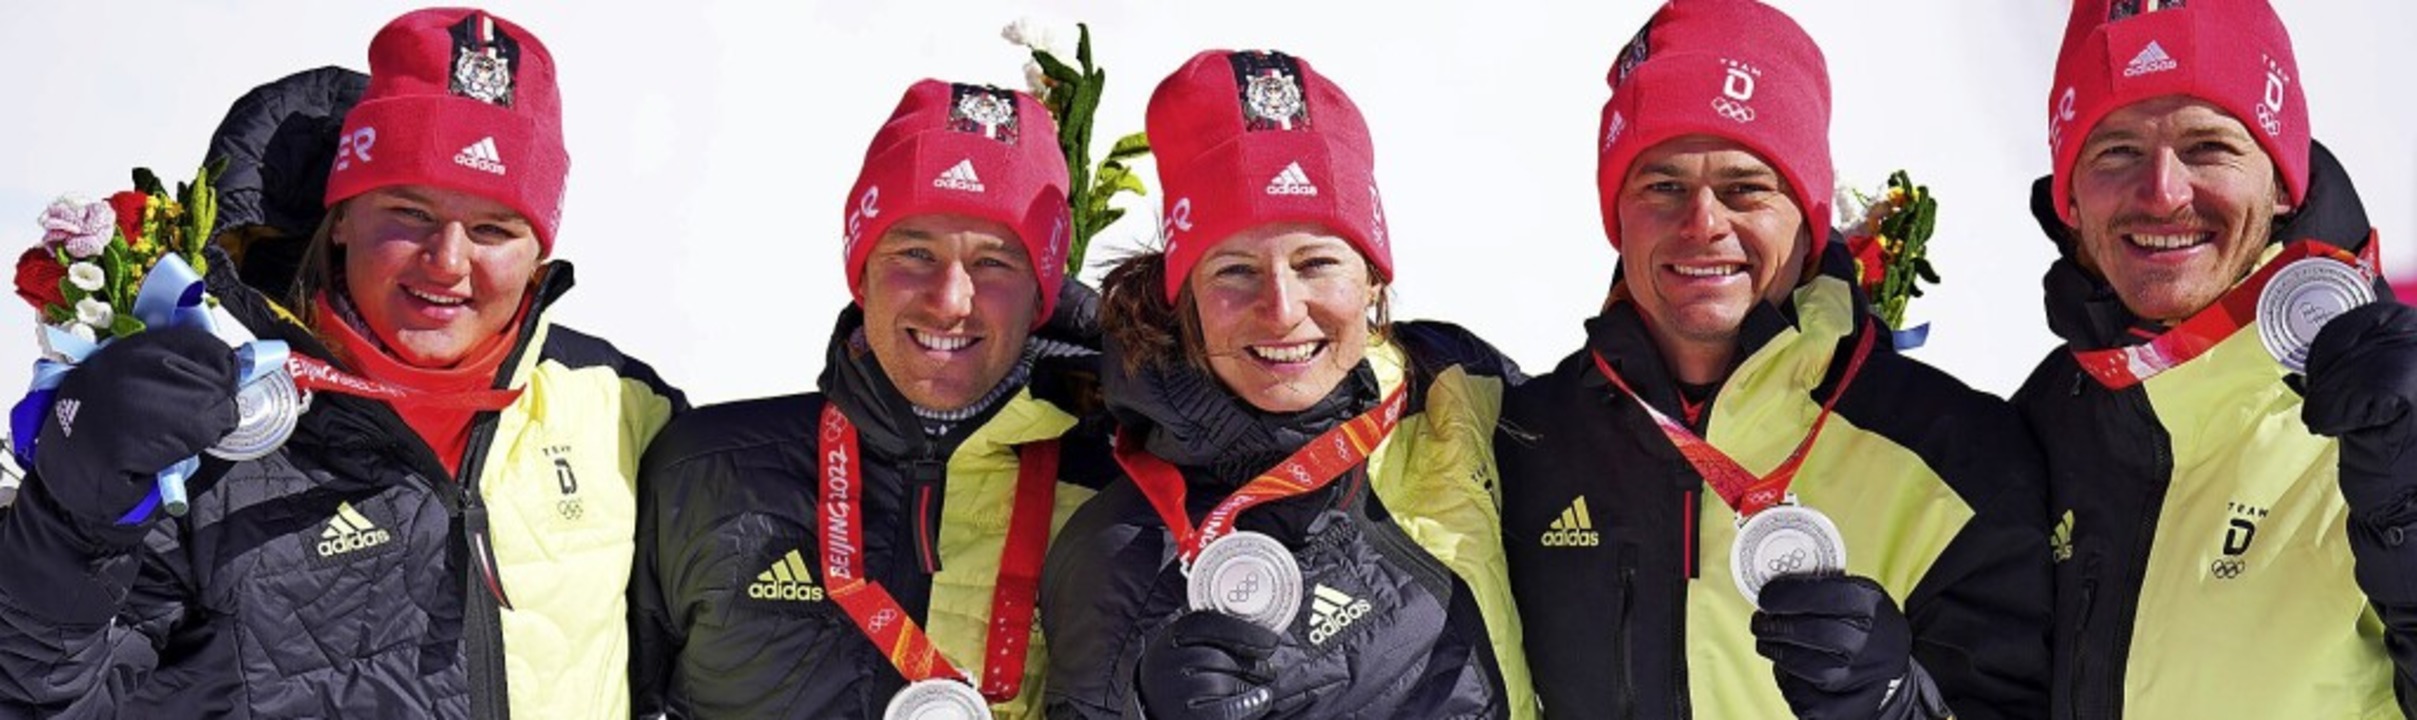 Happy End für das  alpine Team des Deutschen Ski-Verbands   | Foto: Michael Kappeler (dpa)